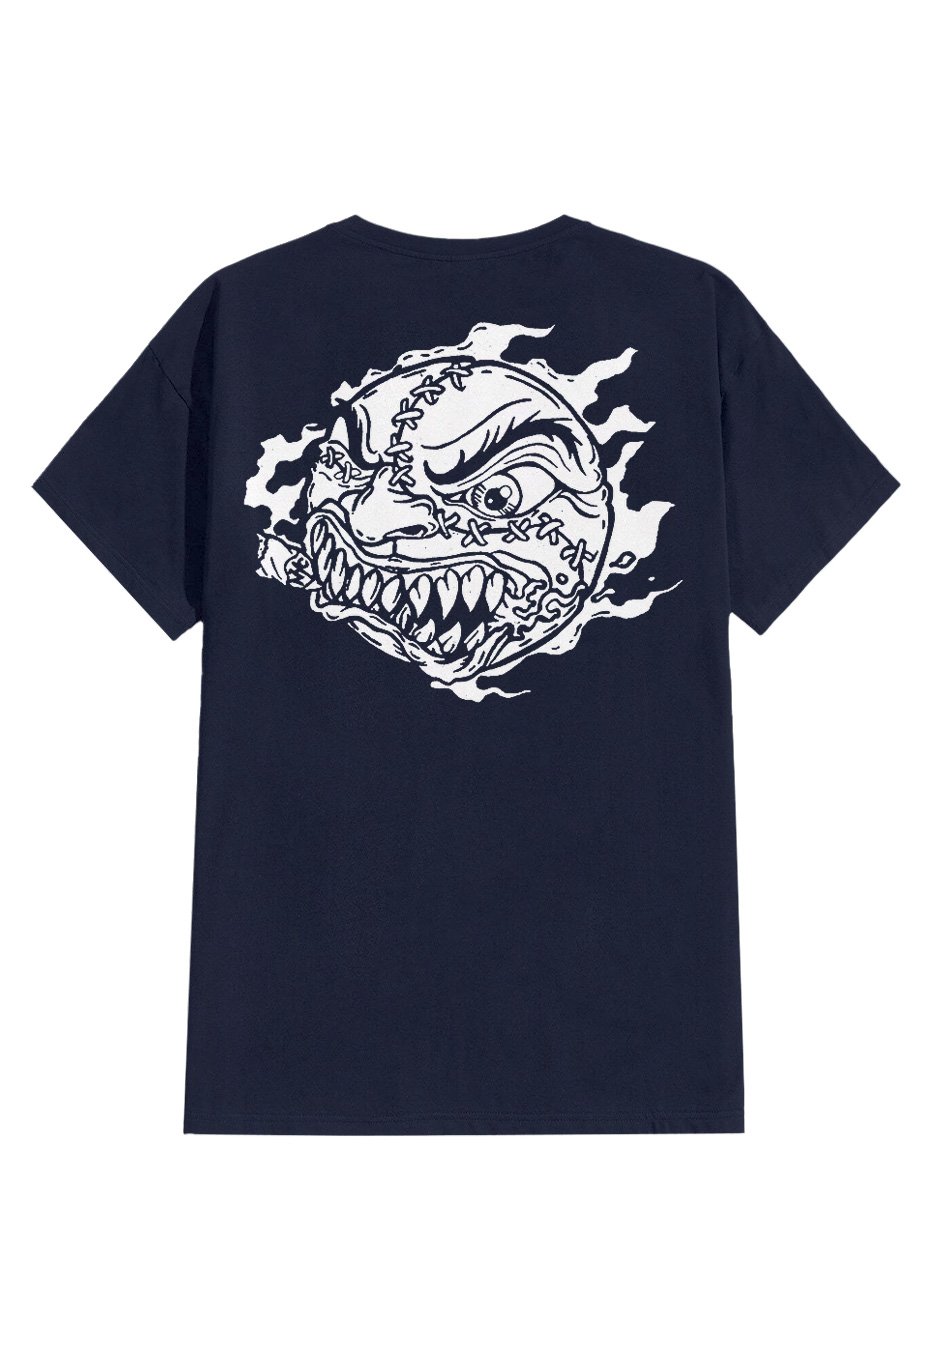 Madball - FTC Navy - T-Shirt